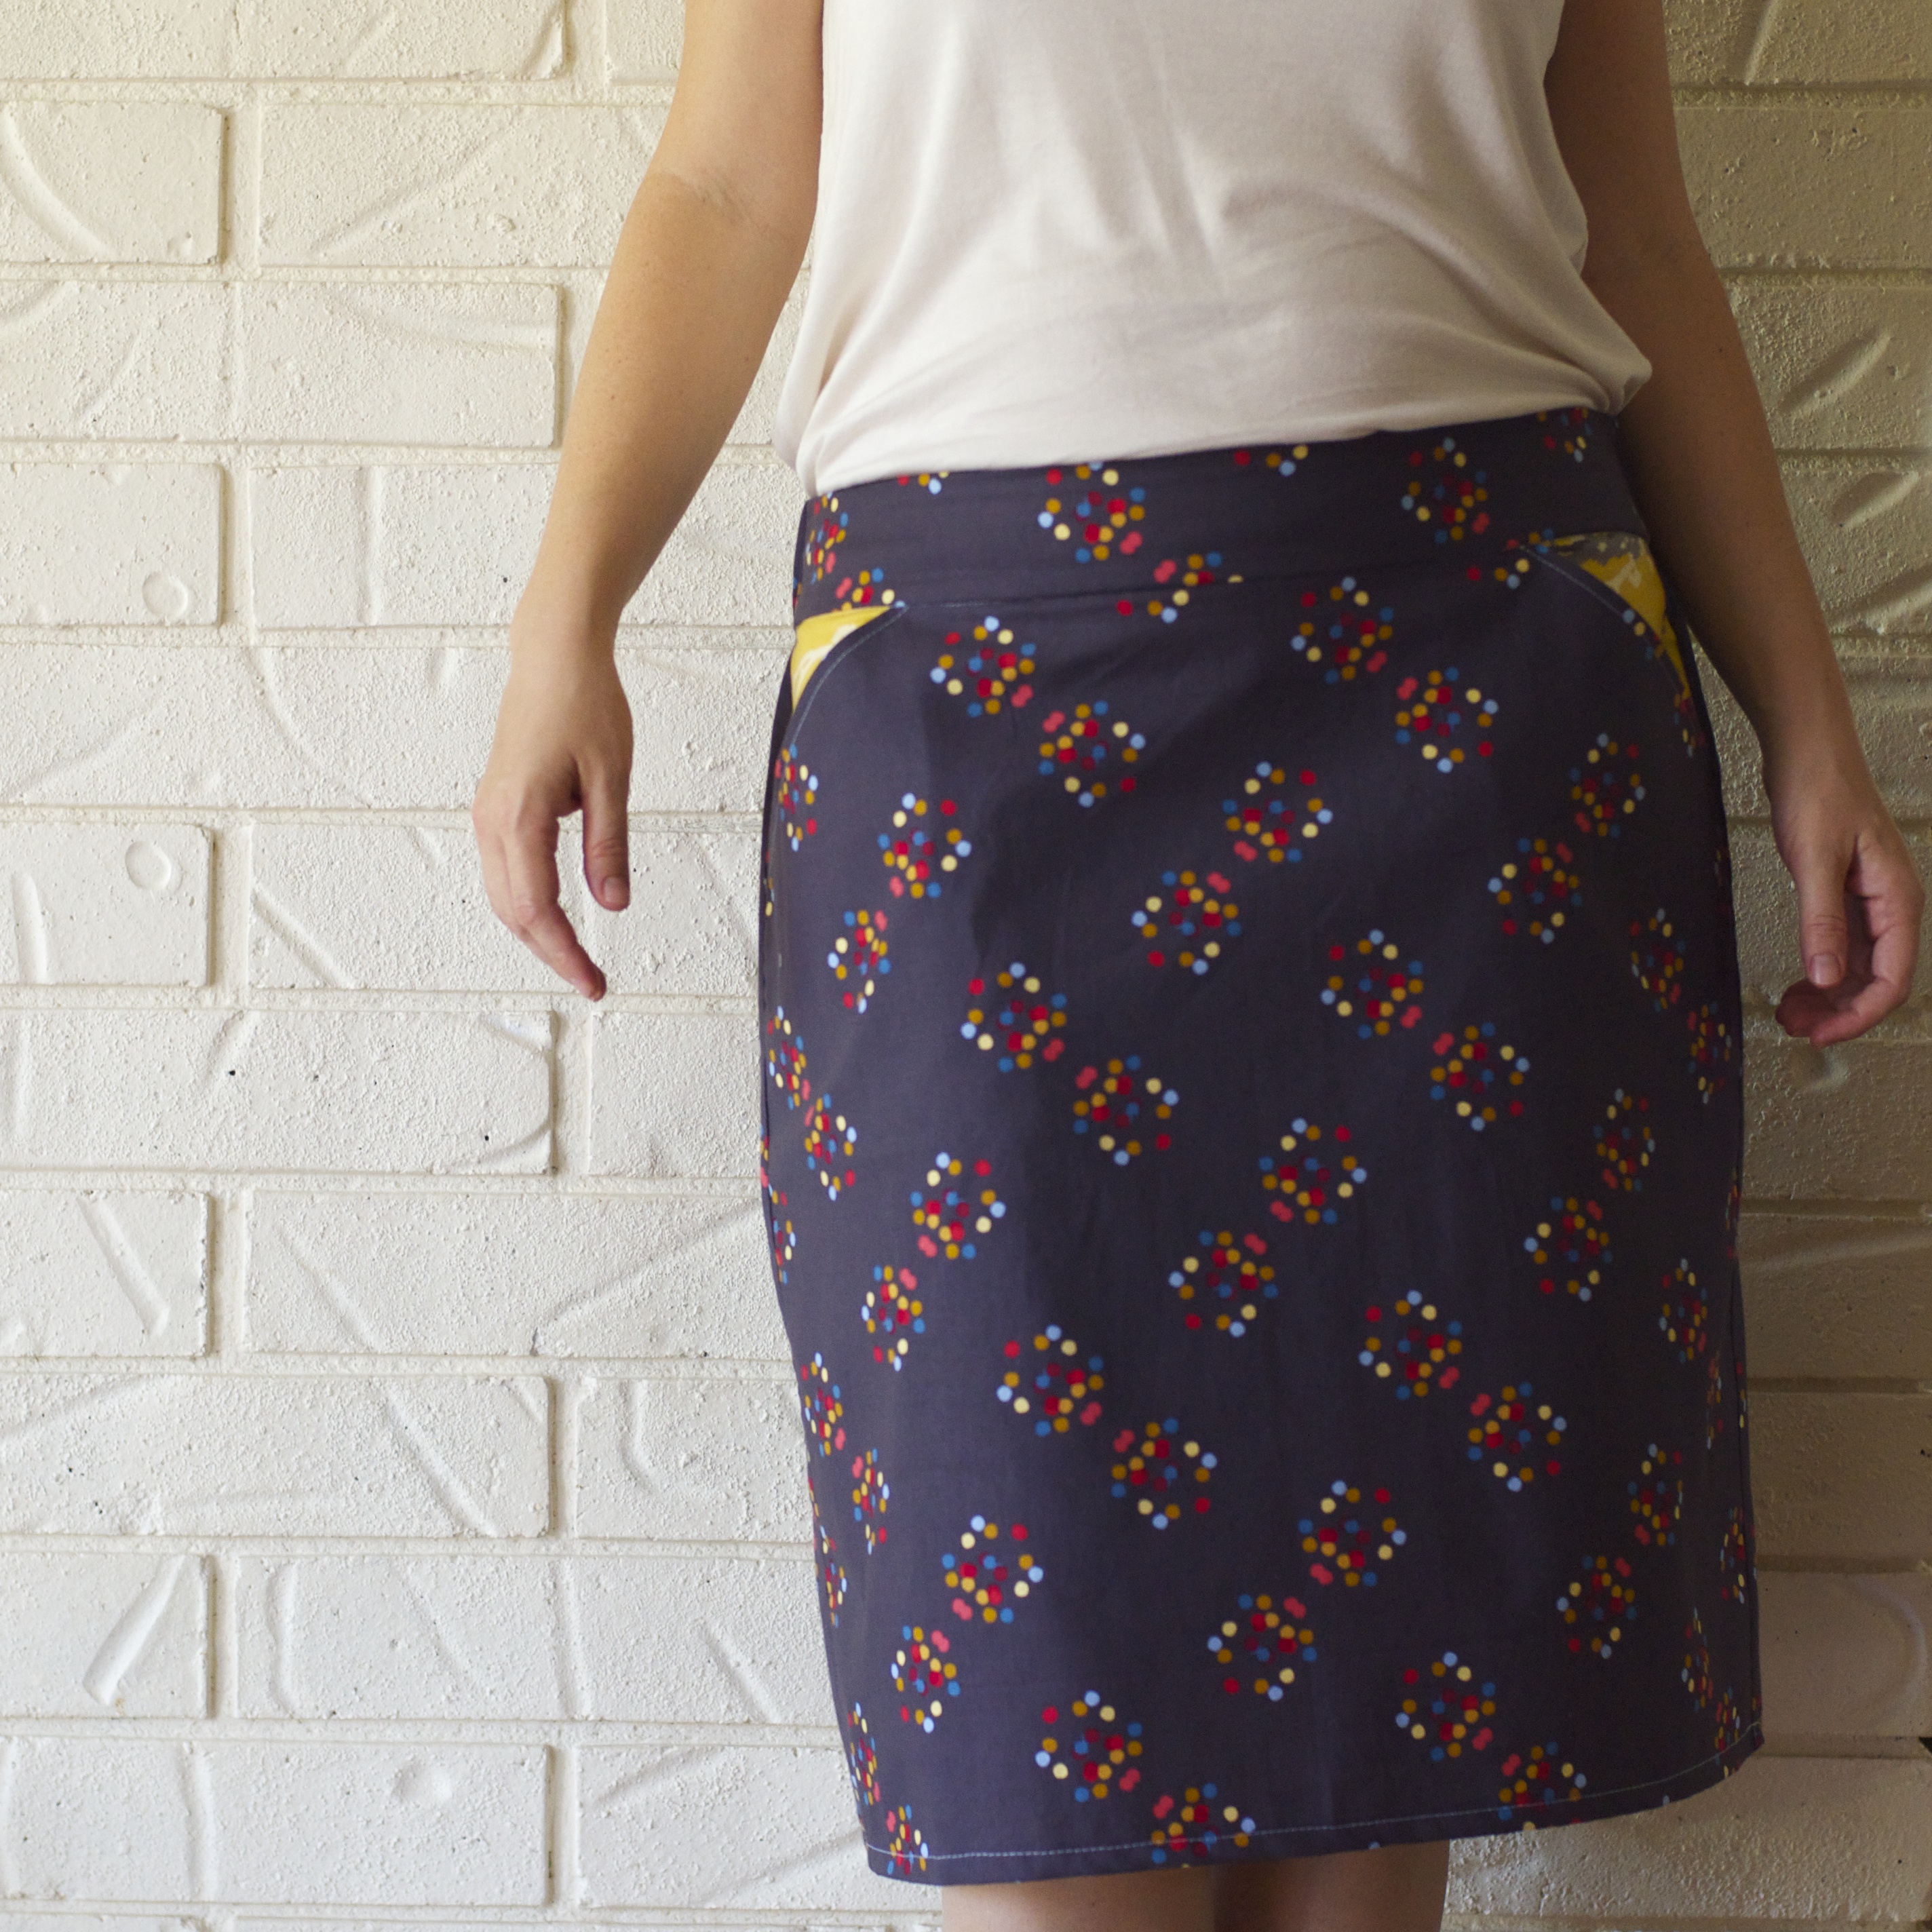 Skirt Patterns For Women 116